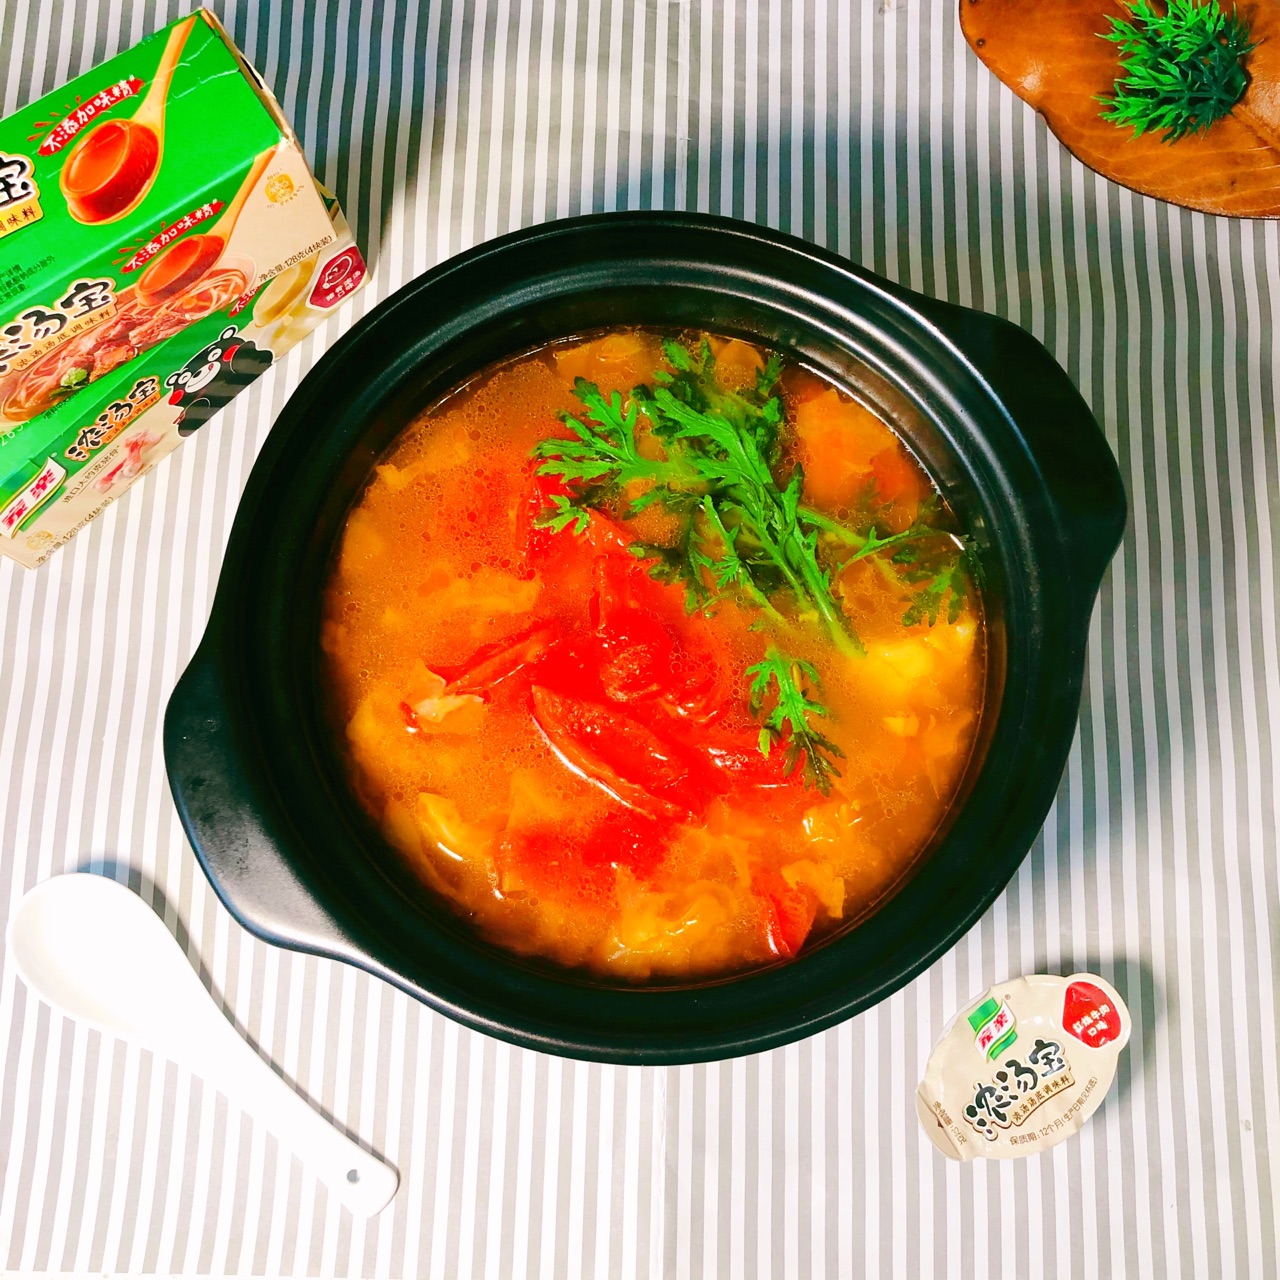 【素菜食譜】六種素高湯的做法 讓素菜更香鮮營養